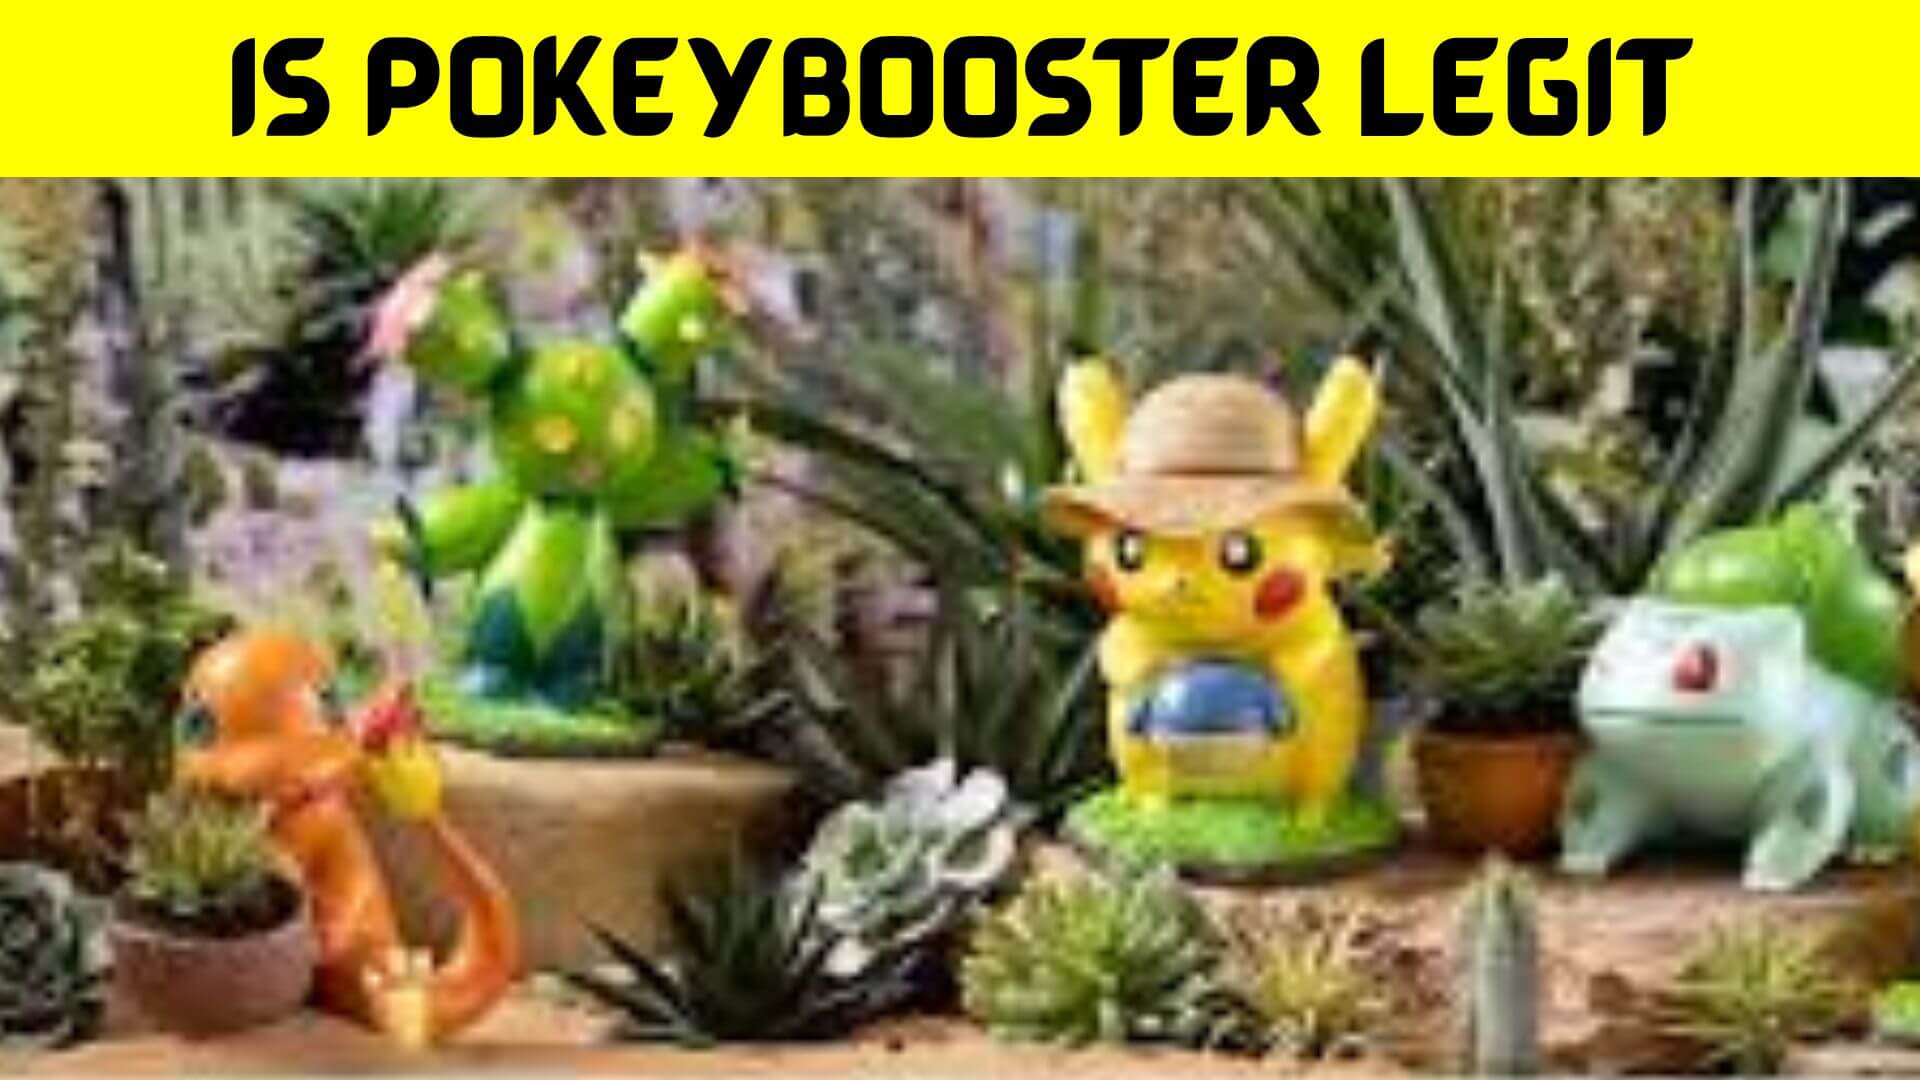 Is Pokeybooster Legit